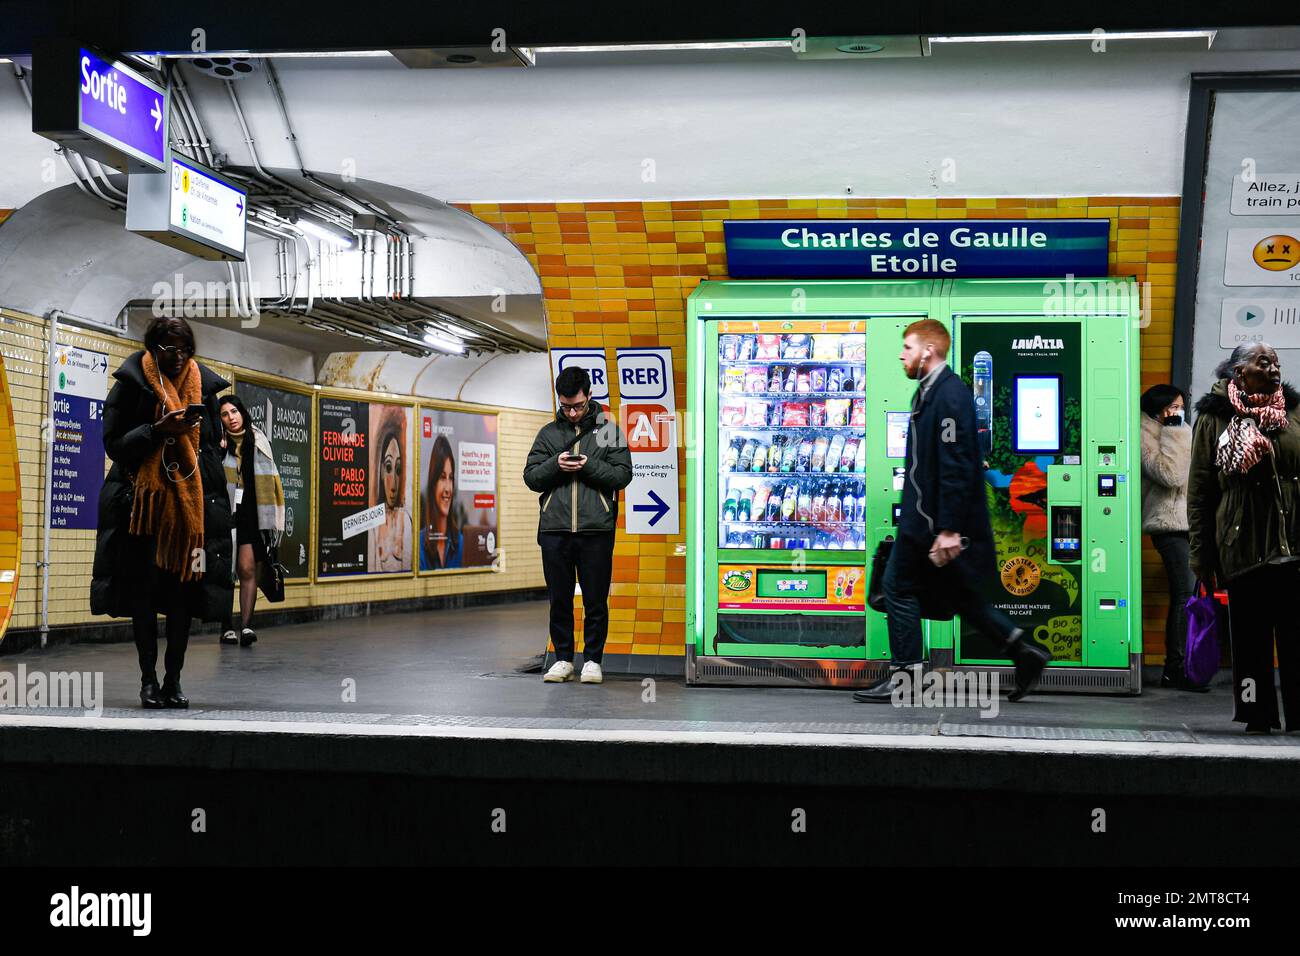 La imagen de la ilustración muestra la plataforma de una estación de metro parisina (RATP metro o metropolitain Charles de Gaulle Etoile), en París, Francia el 31 de enero de 2023. Los sindicatos han pedido una huelga y más manifestaciones para protestar contra el proyecto de ley de reforma de las pensiones. Foto de Victor Joly/ABACAPRESS.COM Foto de stock